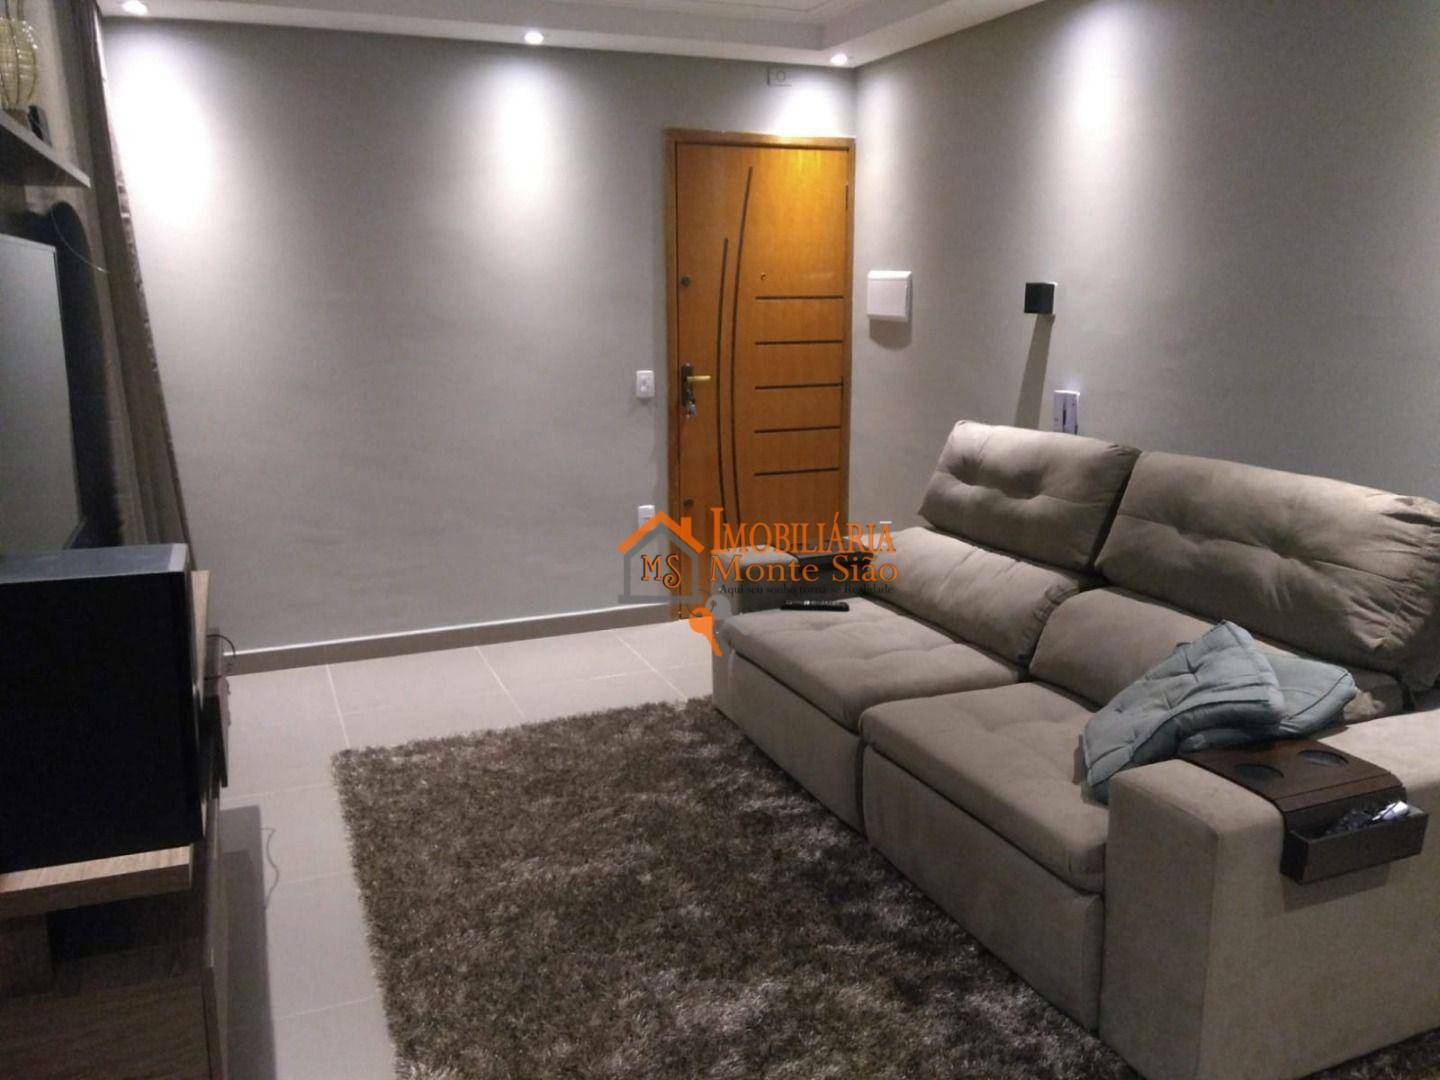 Apartamento Duplex com 2 dormitórios à venda, 82 m² por R$ 372.500,00 - Bonsucesso - Guarulhos/SP